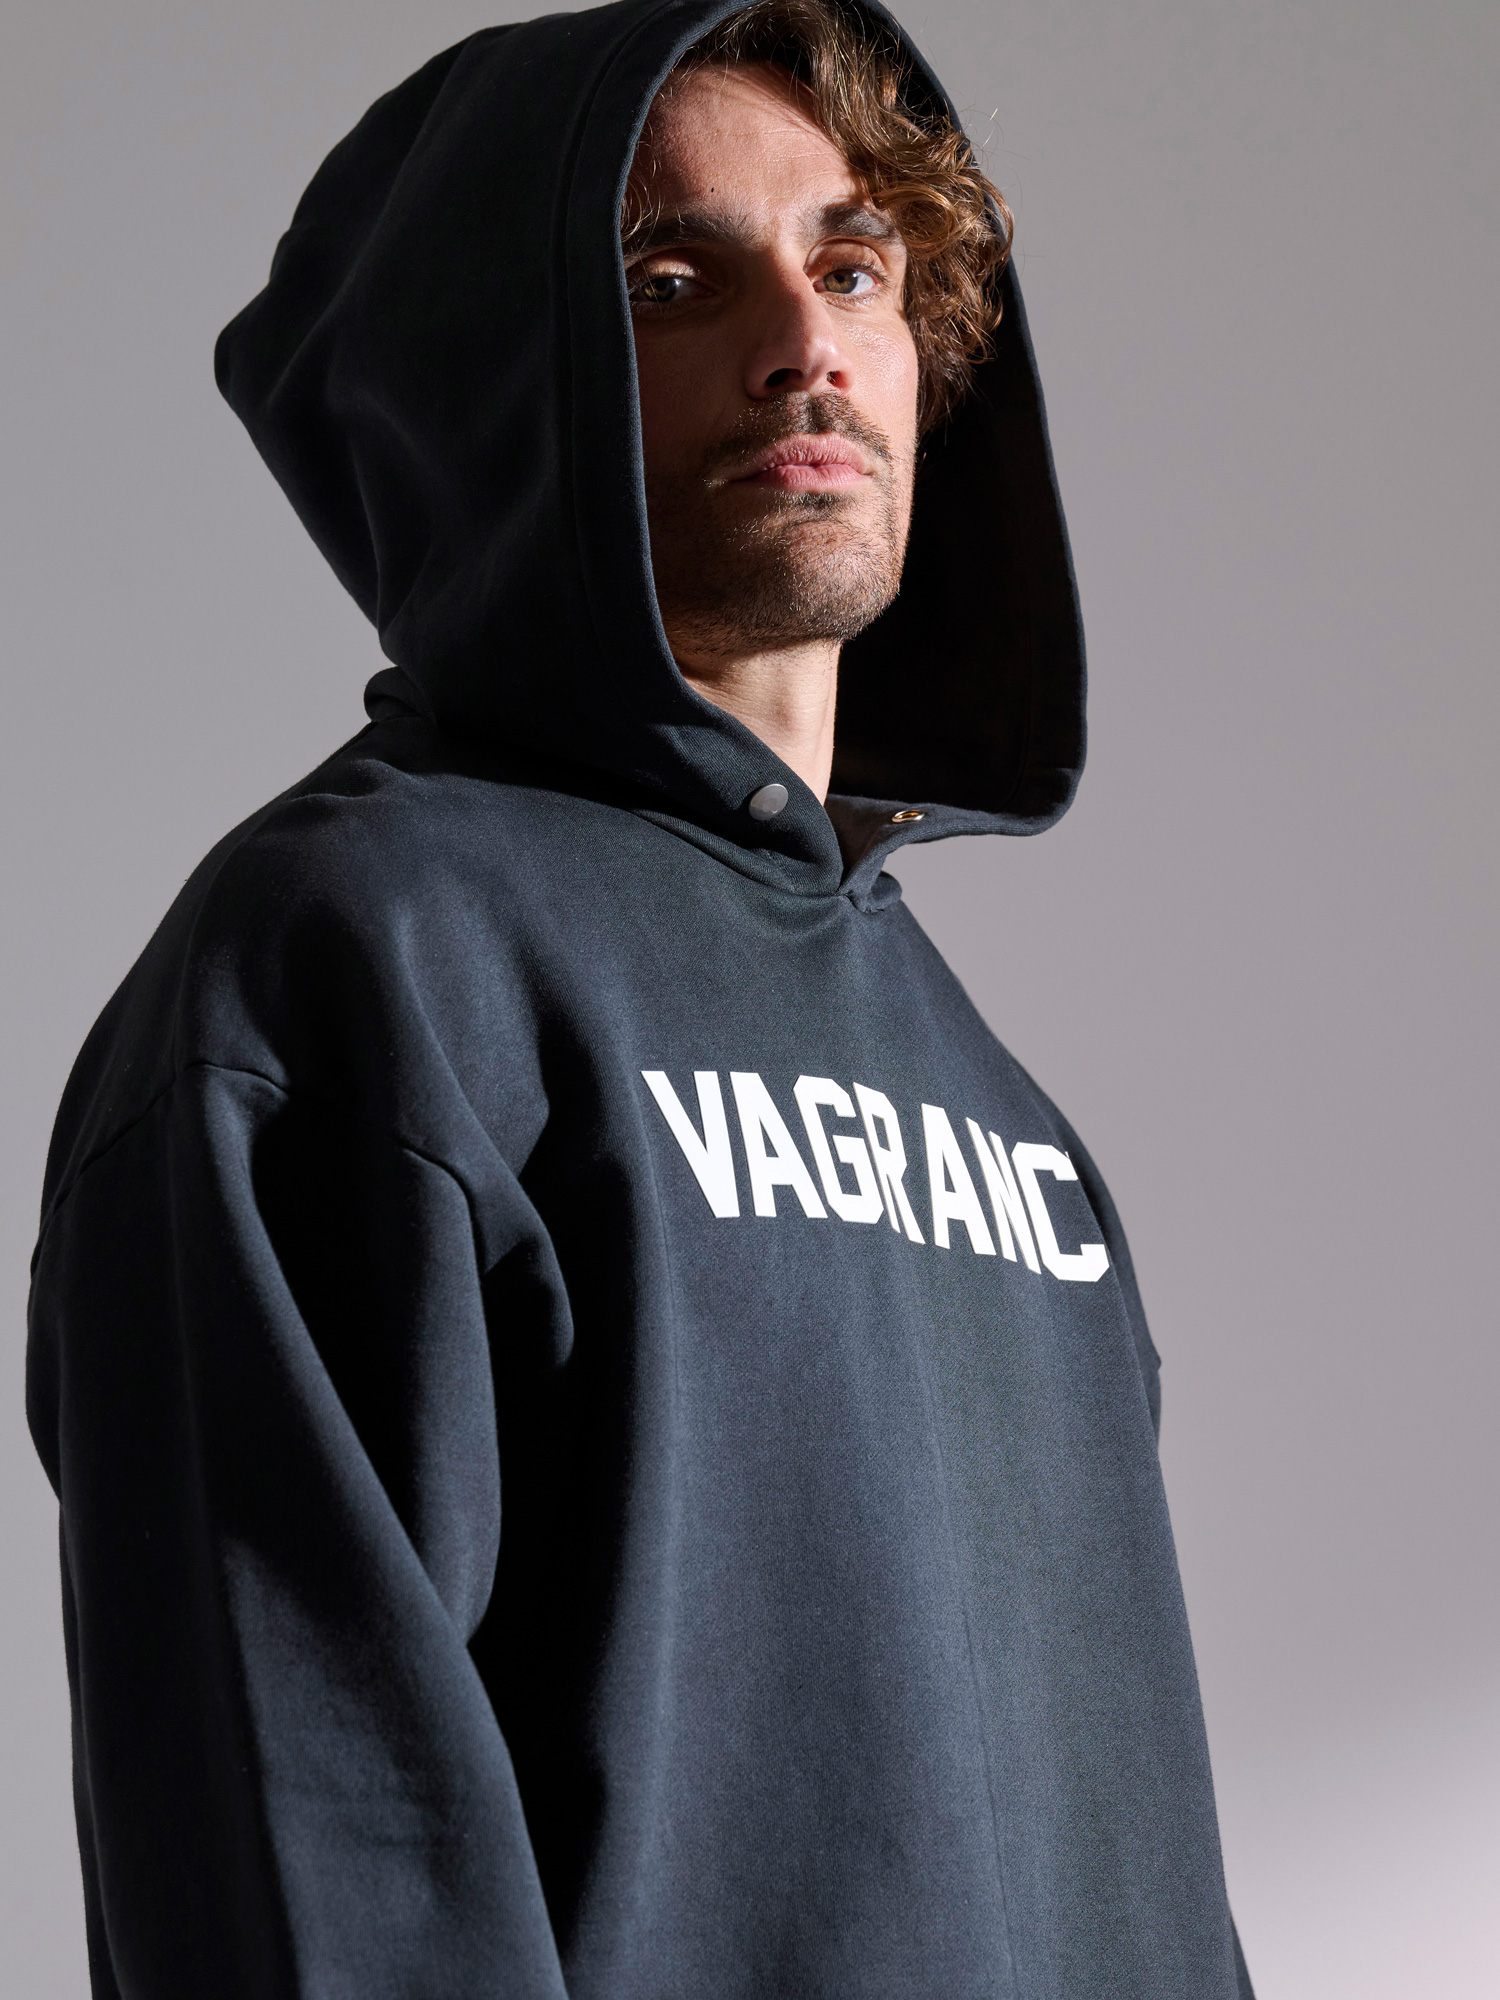 Vagrancy hoodie 5011